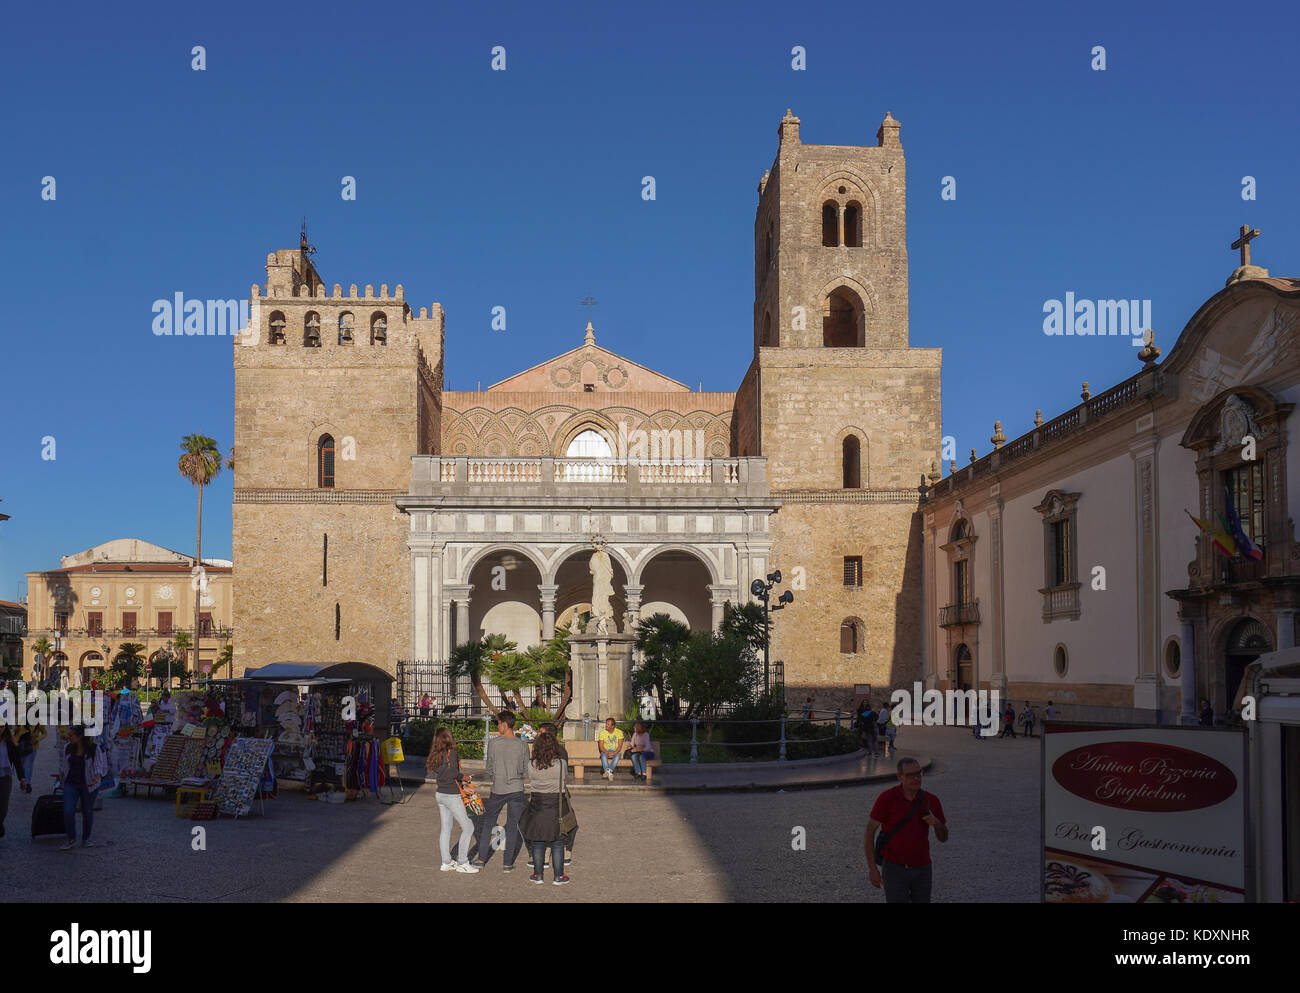 La Cattedrale di Monreale, uno dei maggiori esempi di architettura normanna. da una serie di foto di viaggio in Sicilia, Italia. photo Data: giovedì, Foto Stock